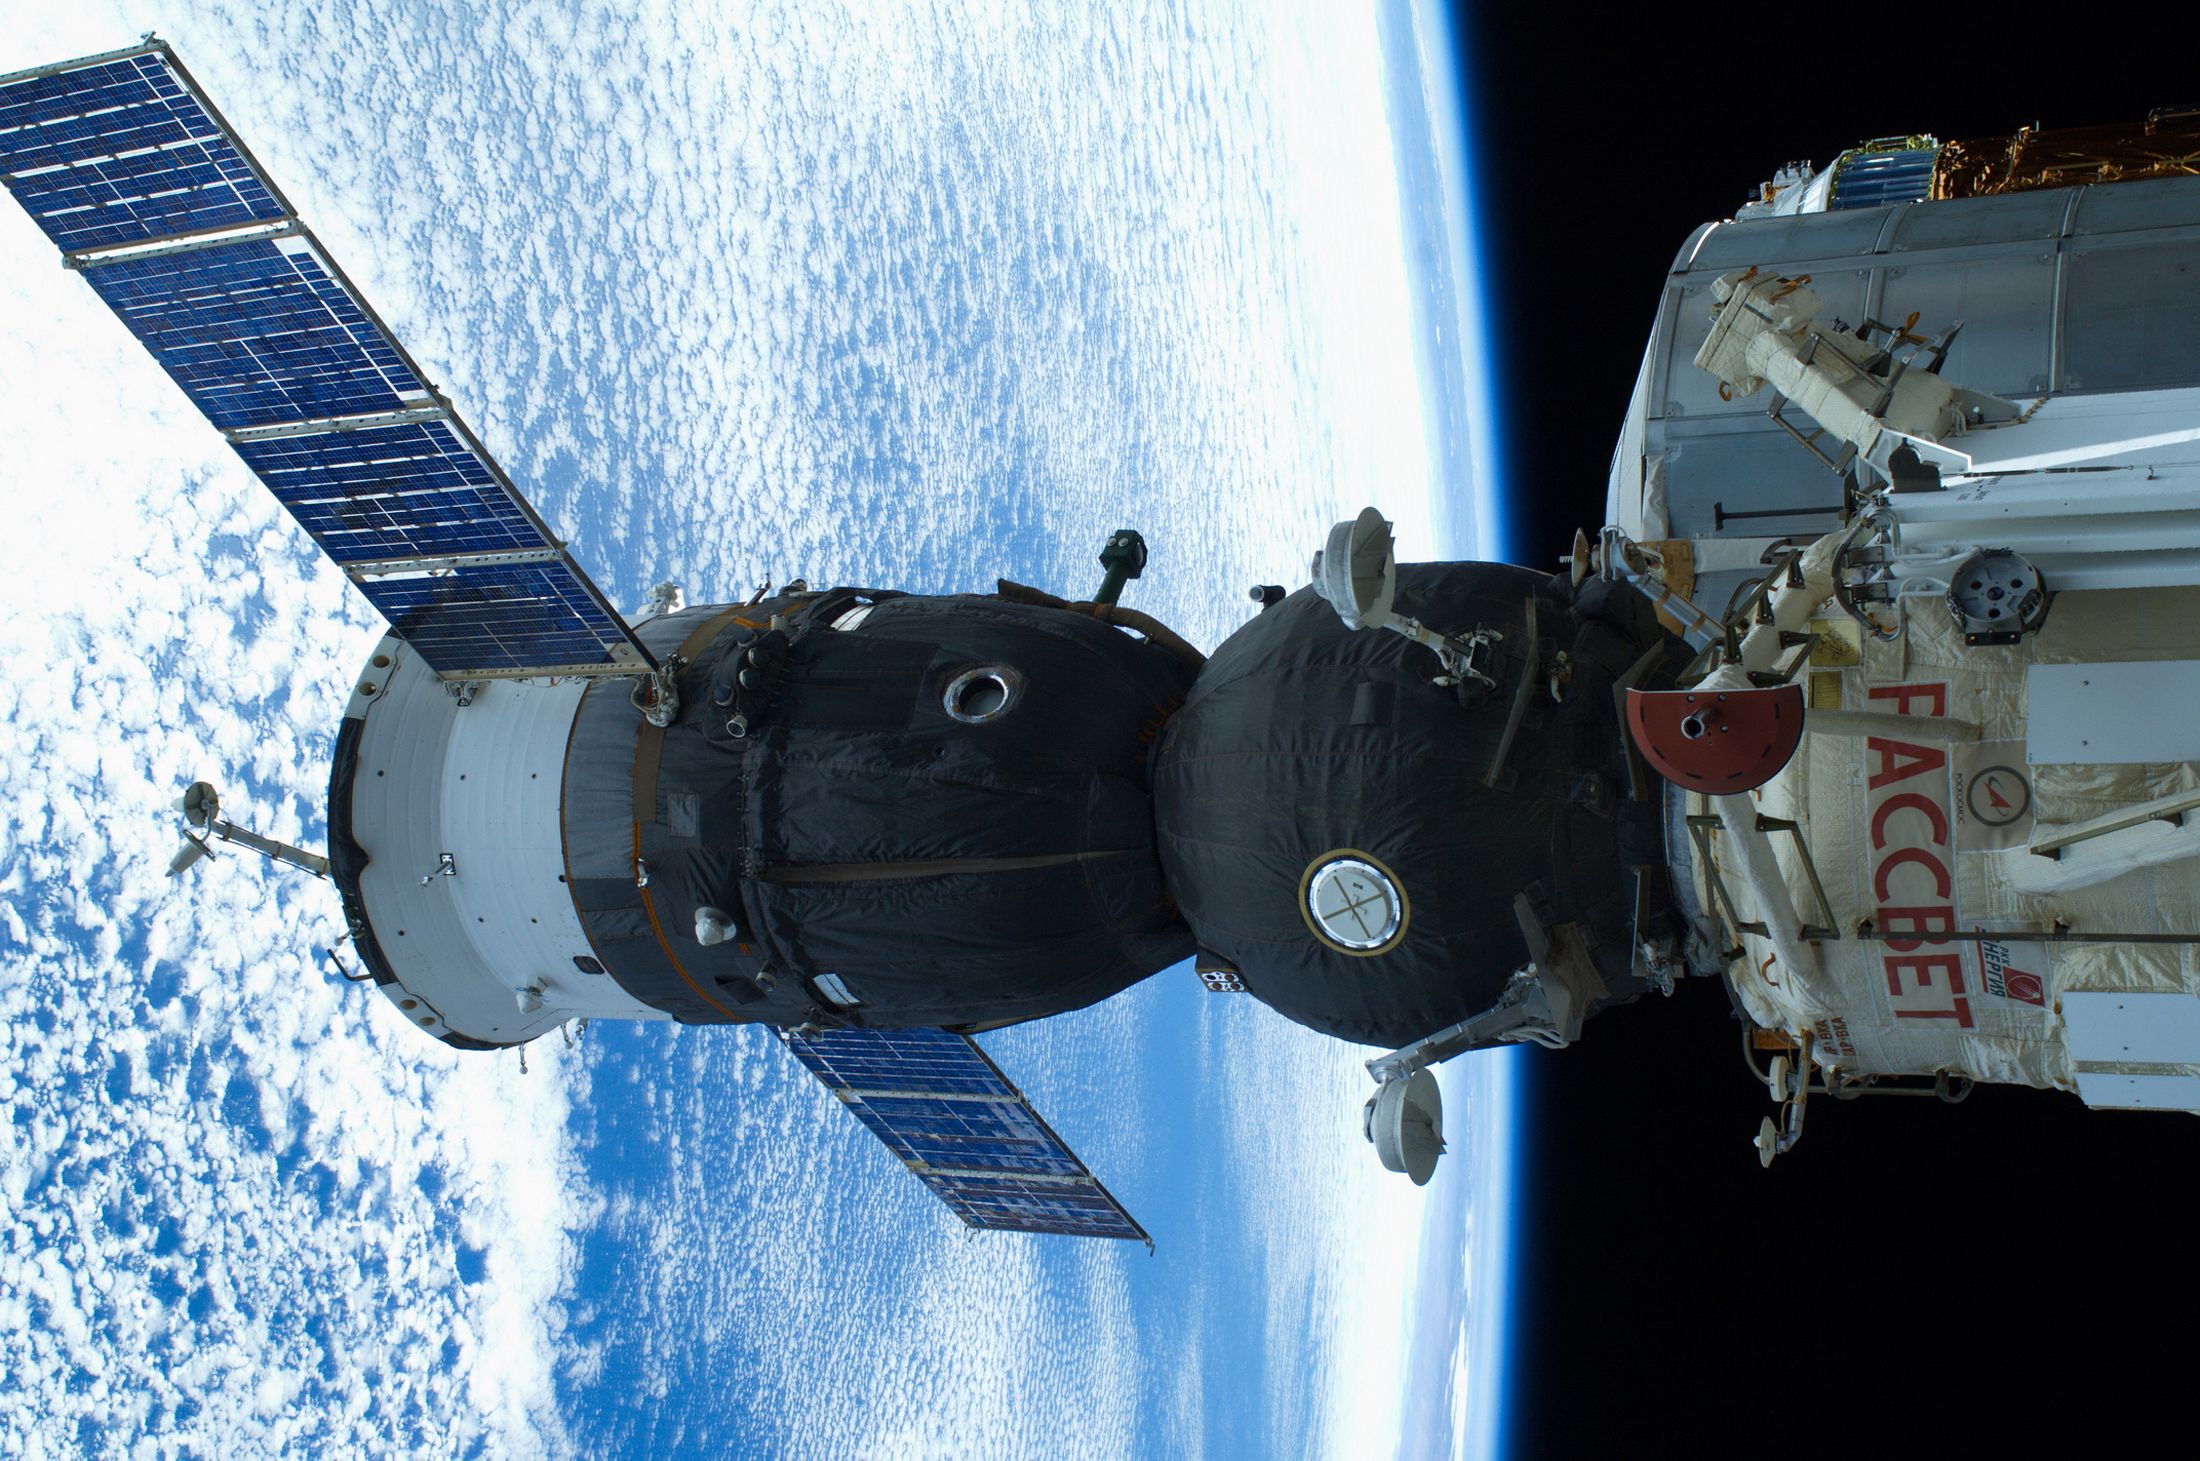 Фото космического корабля в космосе. Космический корабль Союз ТМА. Пилотируемый космический корабль Союз-ТМА. Корабль Союз МКС. Космический корабль Союз МС.